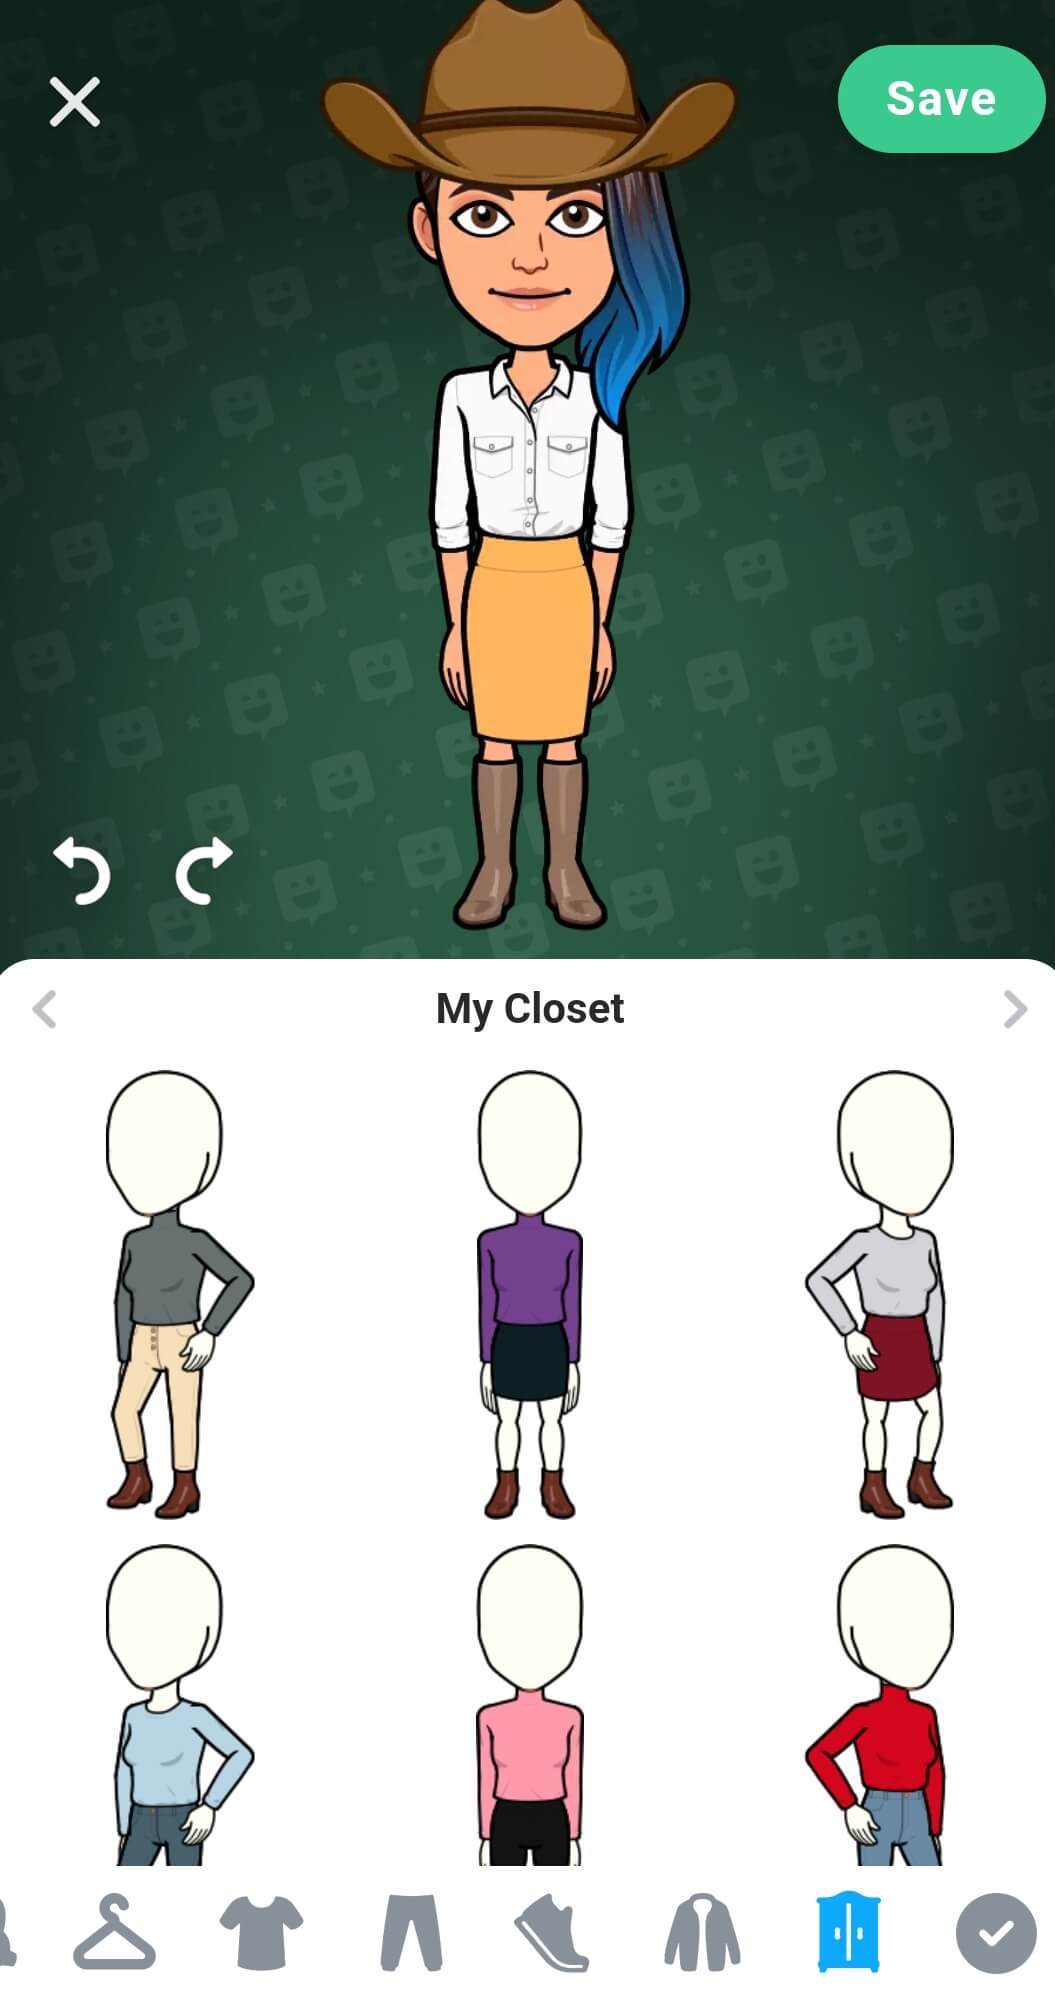 Uma variedade de roupas estão salvas no armário do avatar, na metade inferior da tela. Há um botão de salvar no canto superior direito.